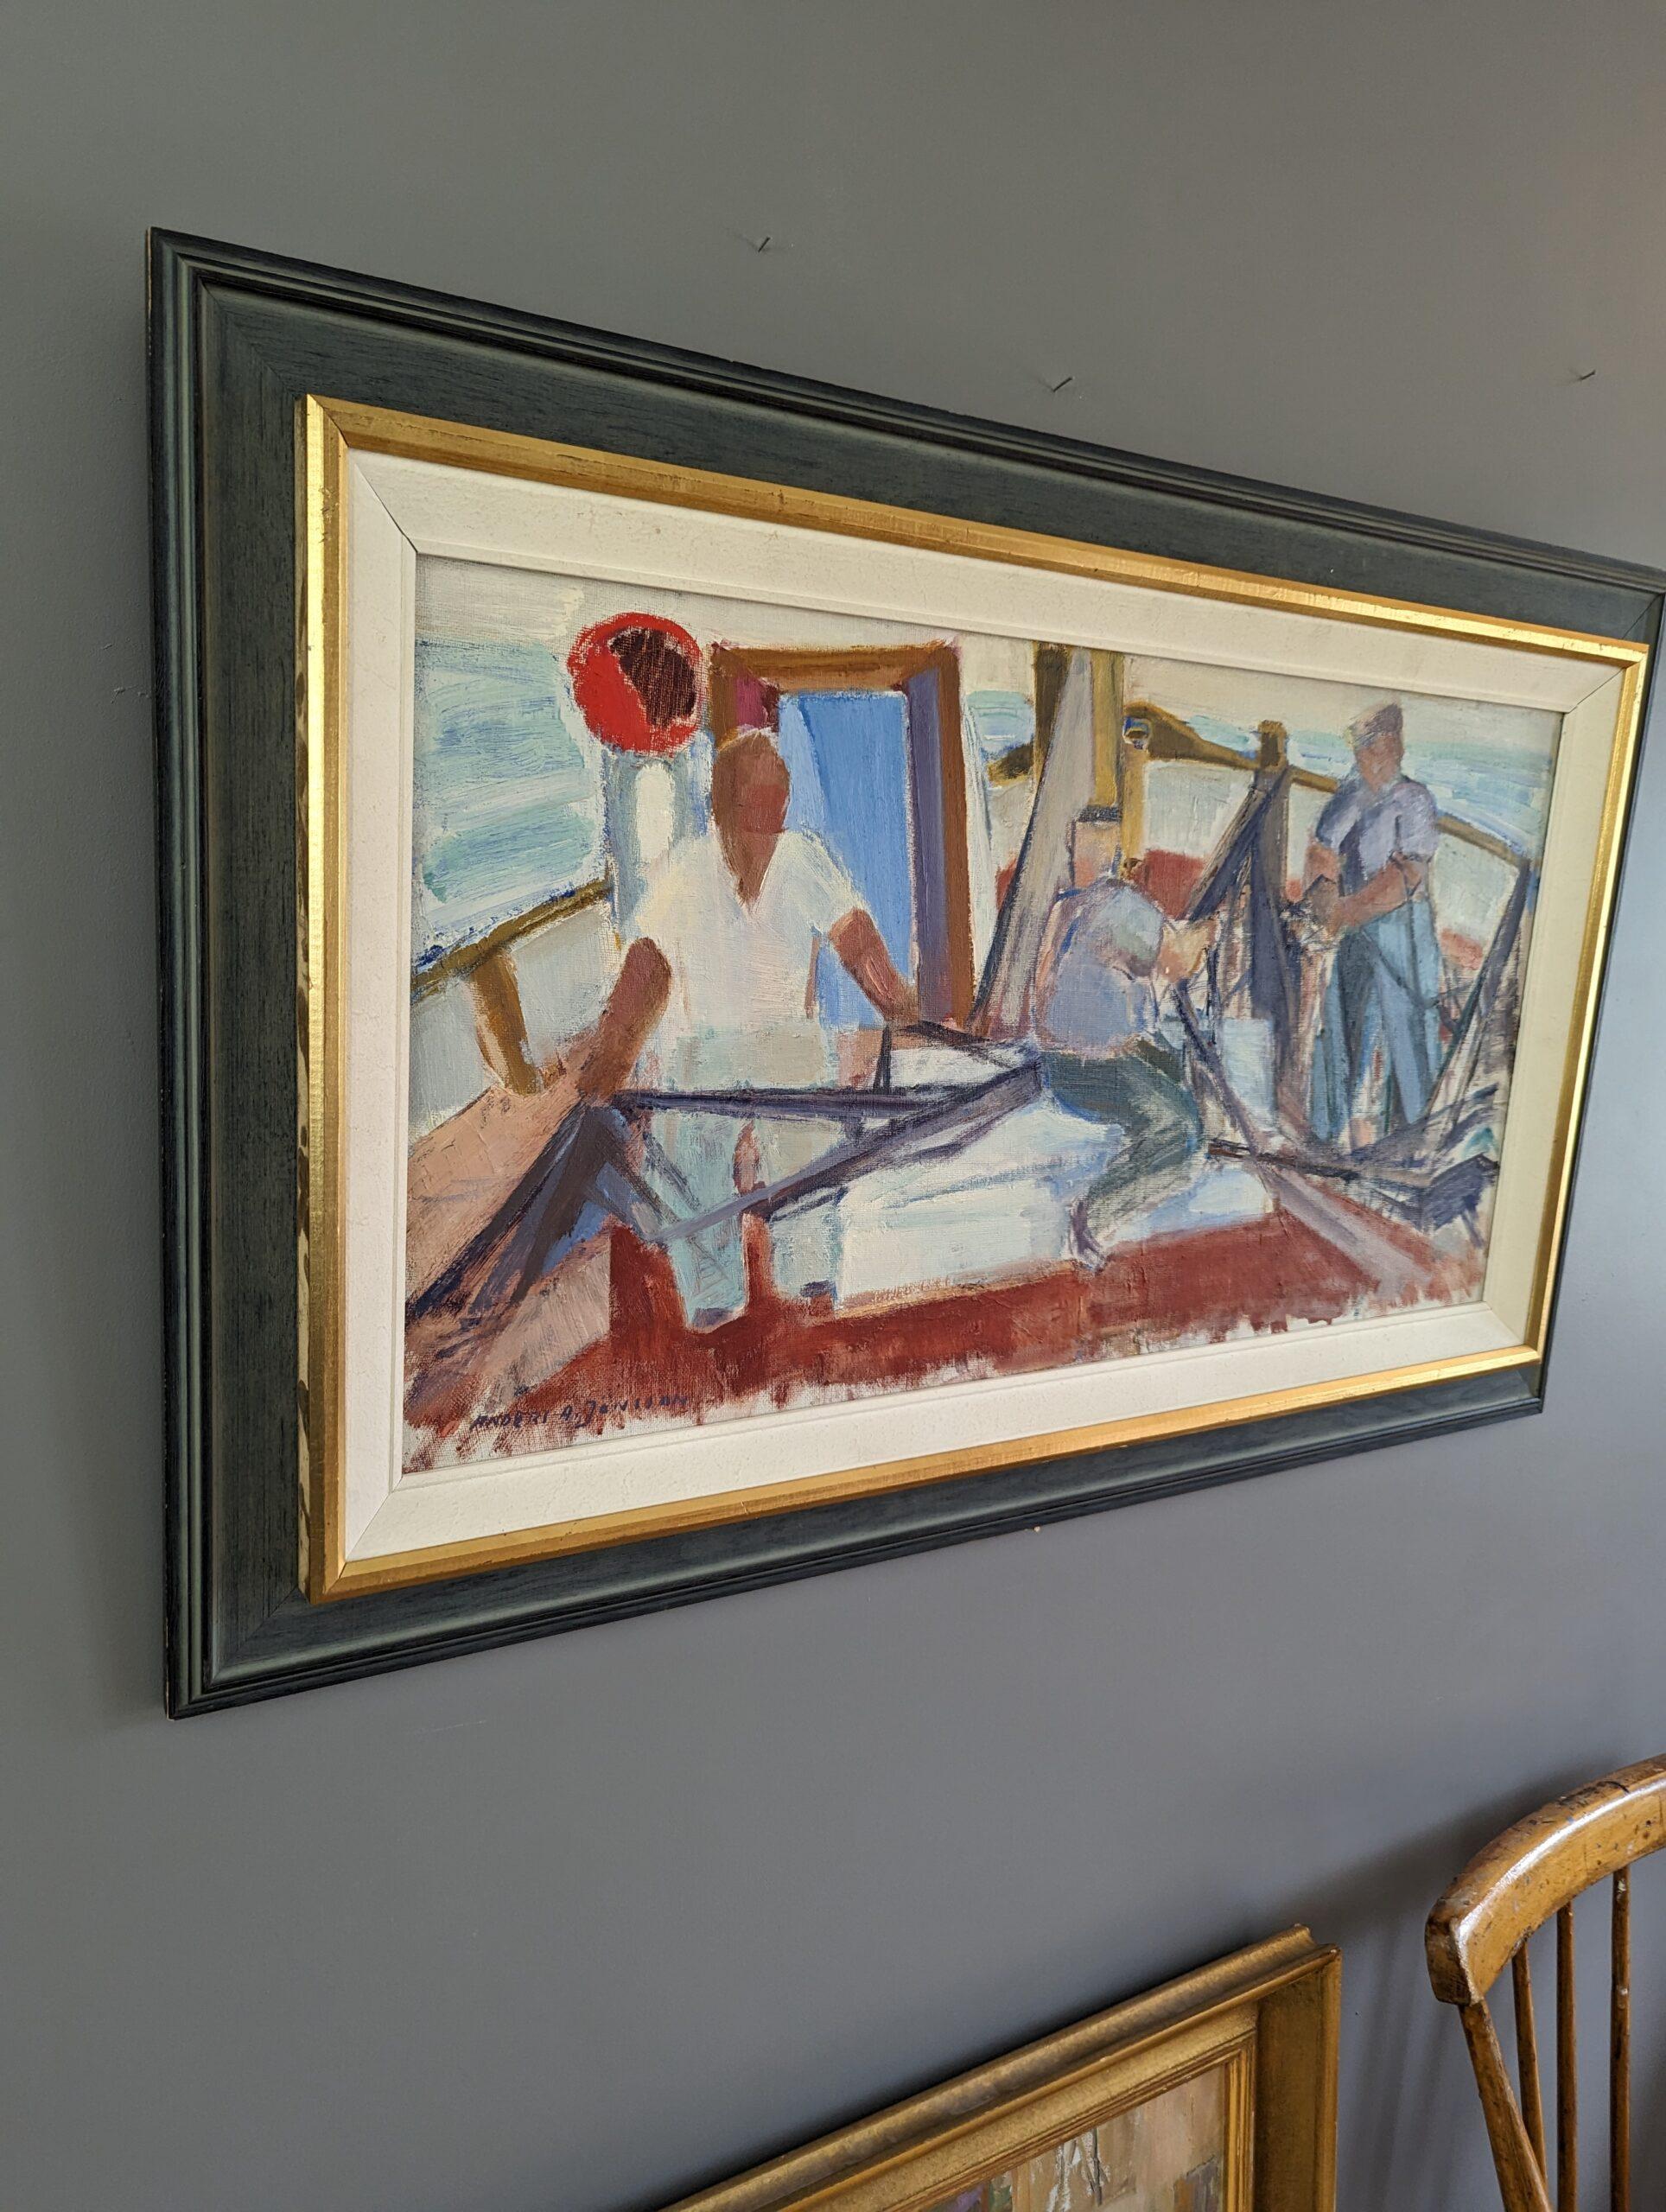 SEA CATCH (ATTRAPE-MER)
Dimensions : 54,5 x 87 cm (cadre compris)
Huile sur toile

Une composition moderniste du milieu du siècle, brillamment exécutée et vivante, à l'huile, peinte sur toile.

Dans cette scène, nous voyons un groupe de trois